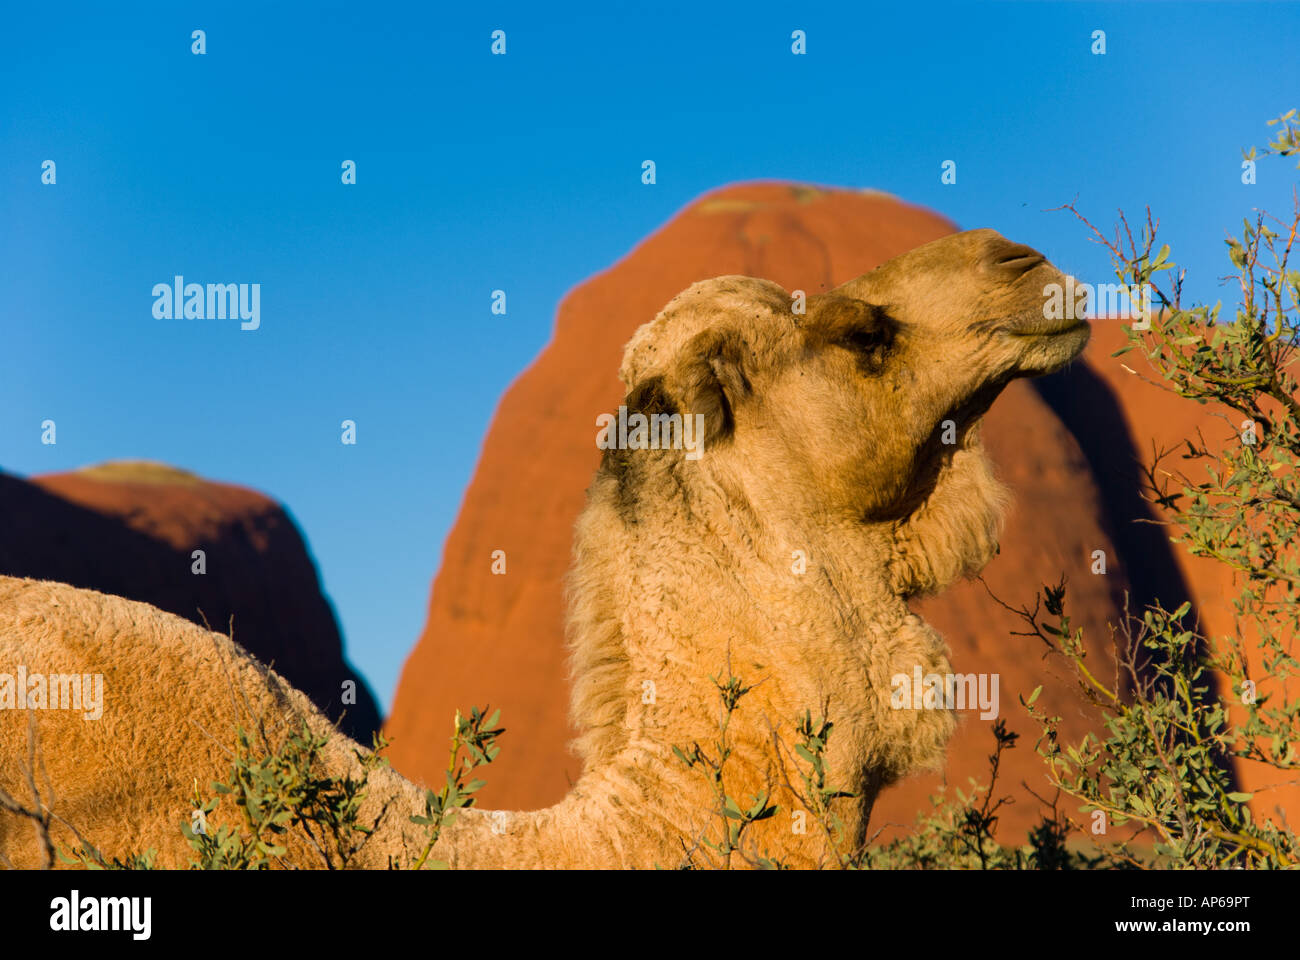 Camel in front of Kata Tjuta in outback Australia Stock Photo